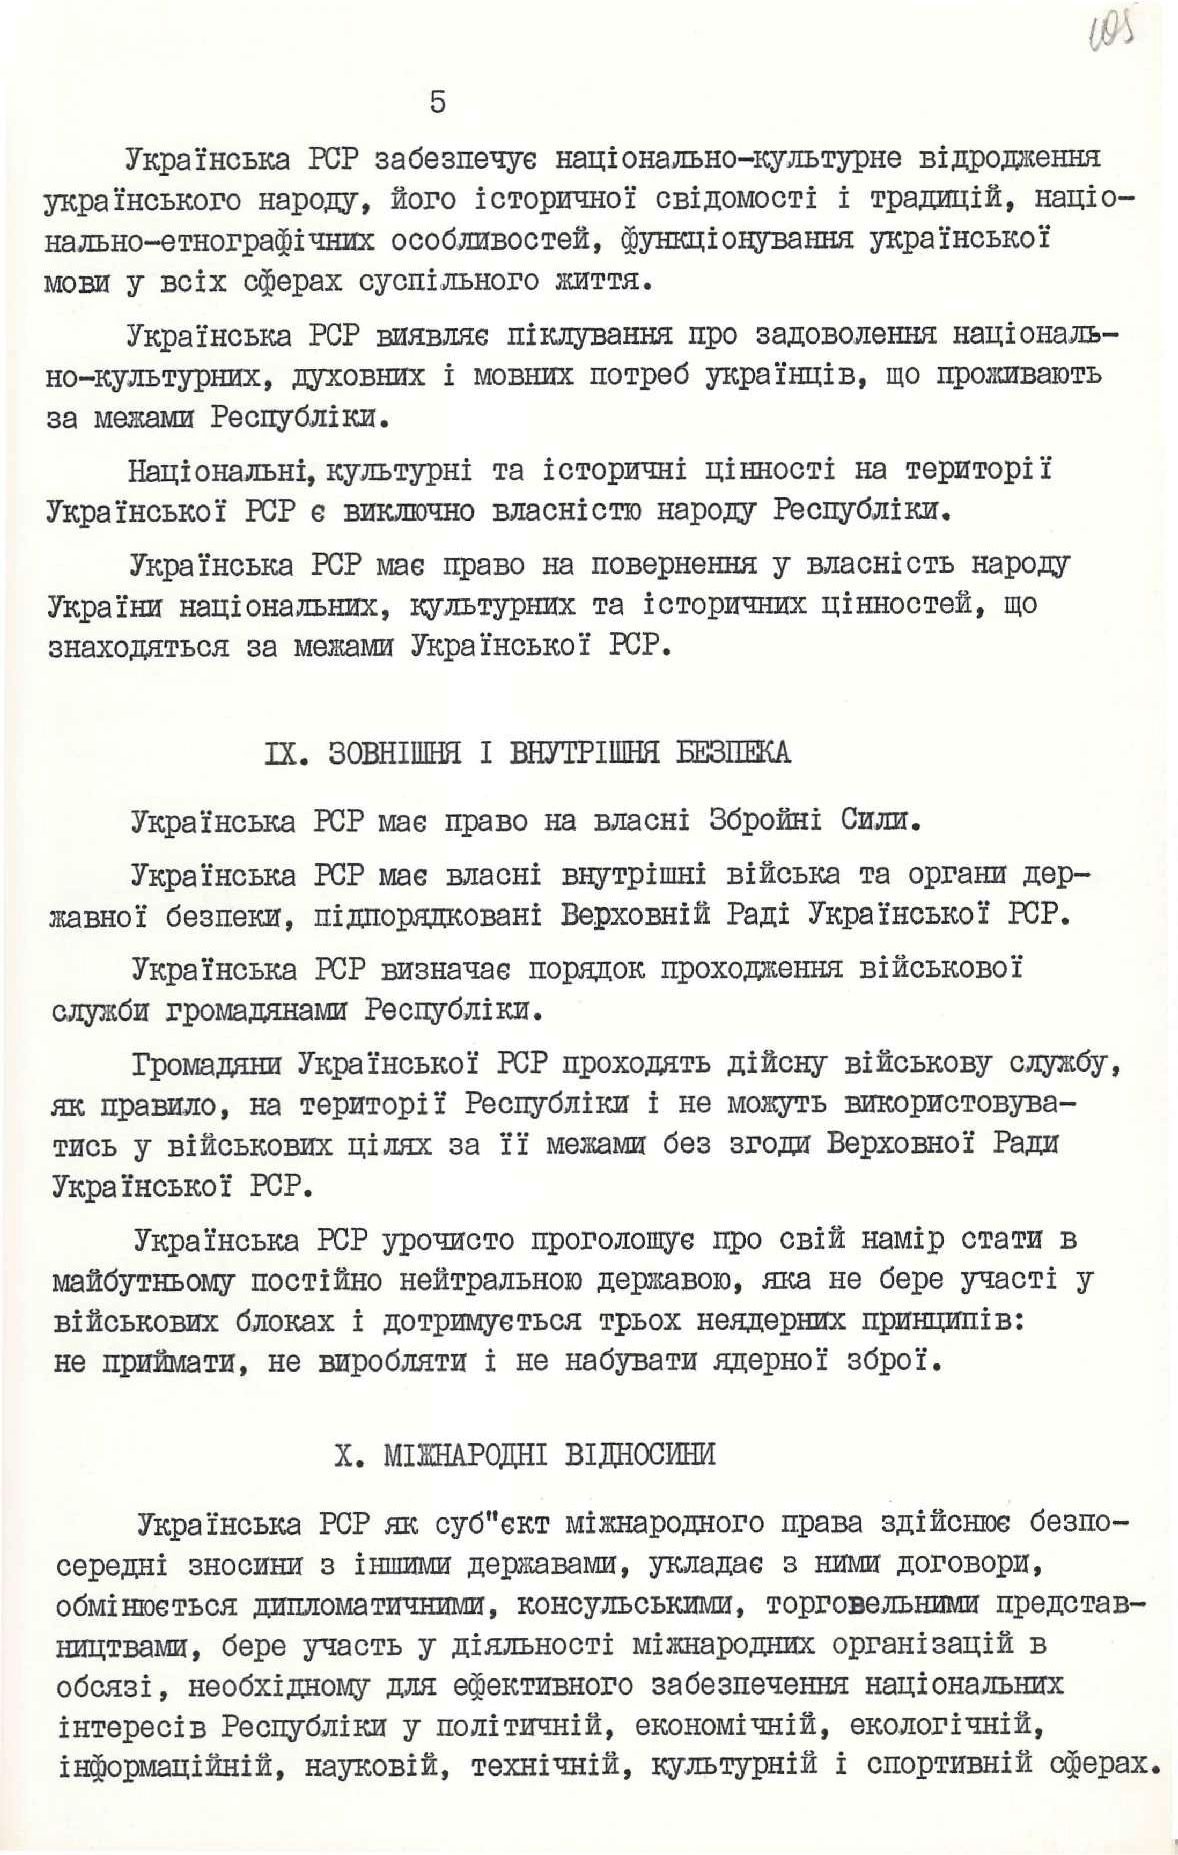 Декларація про державний суверенітет України. Київ, 16 липня 1990 р.